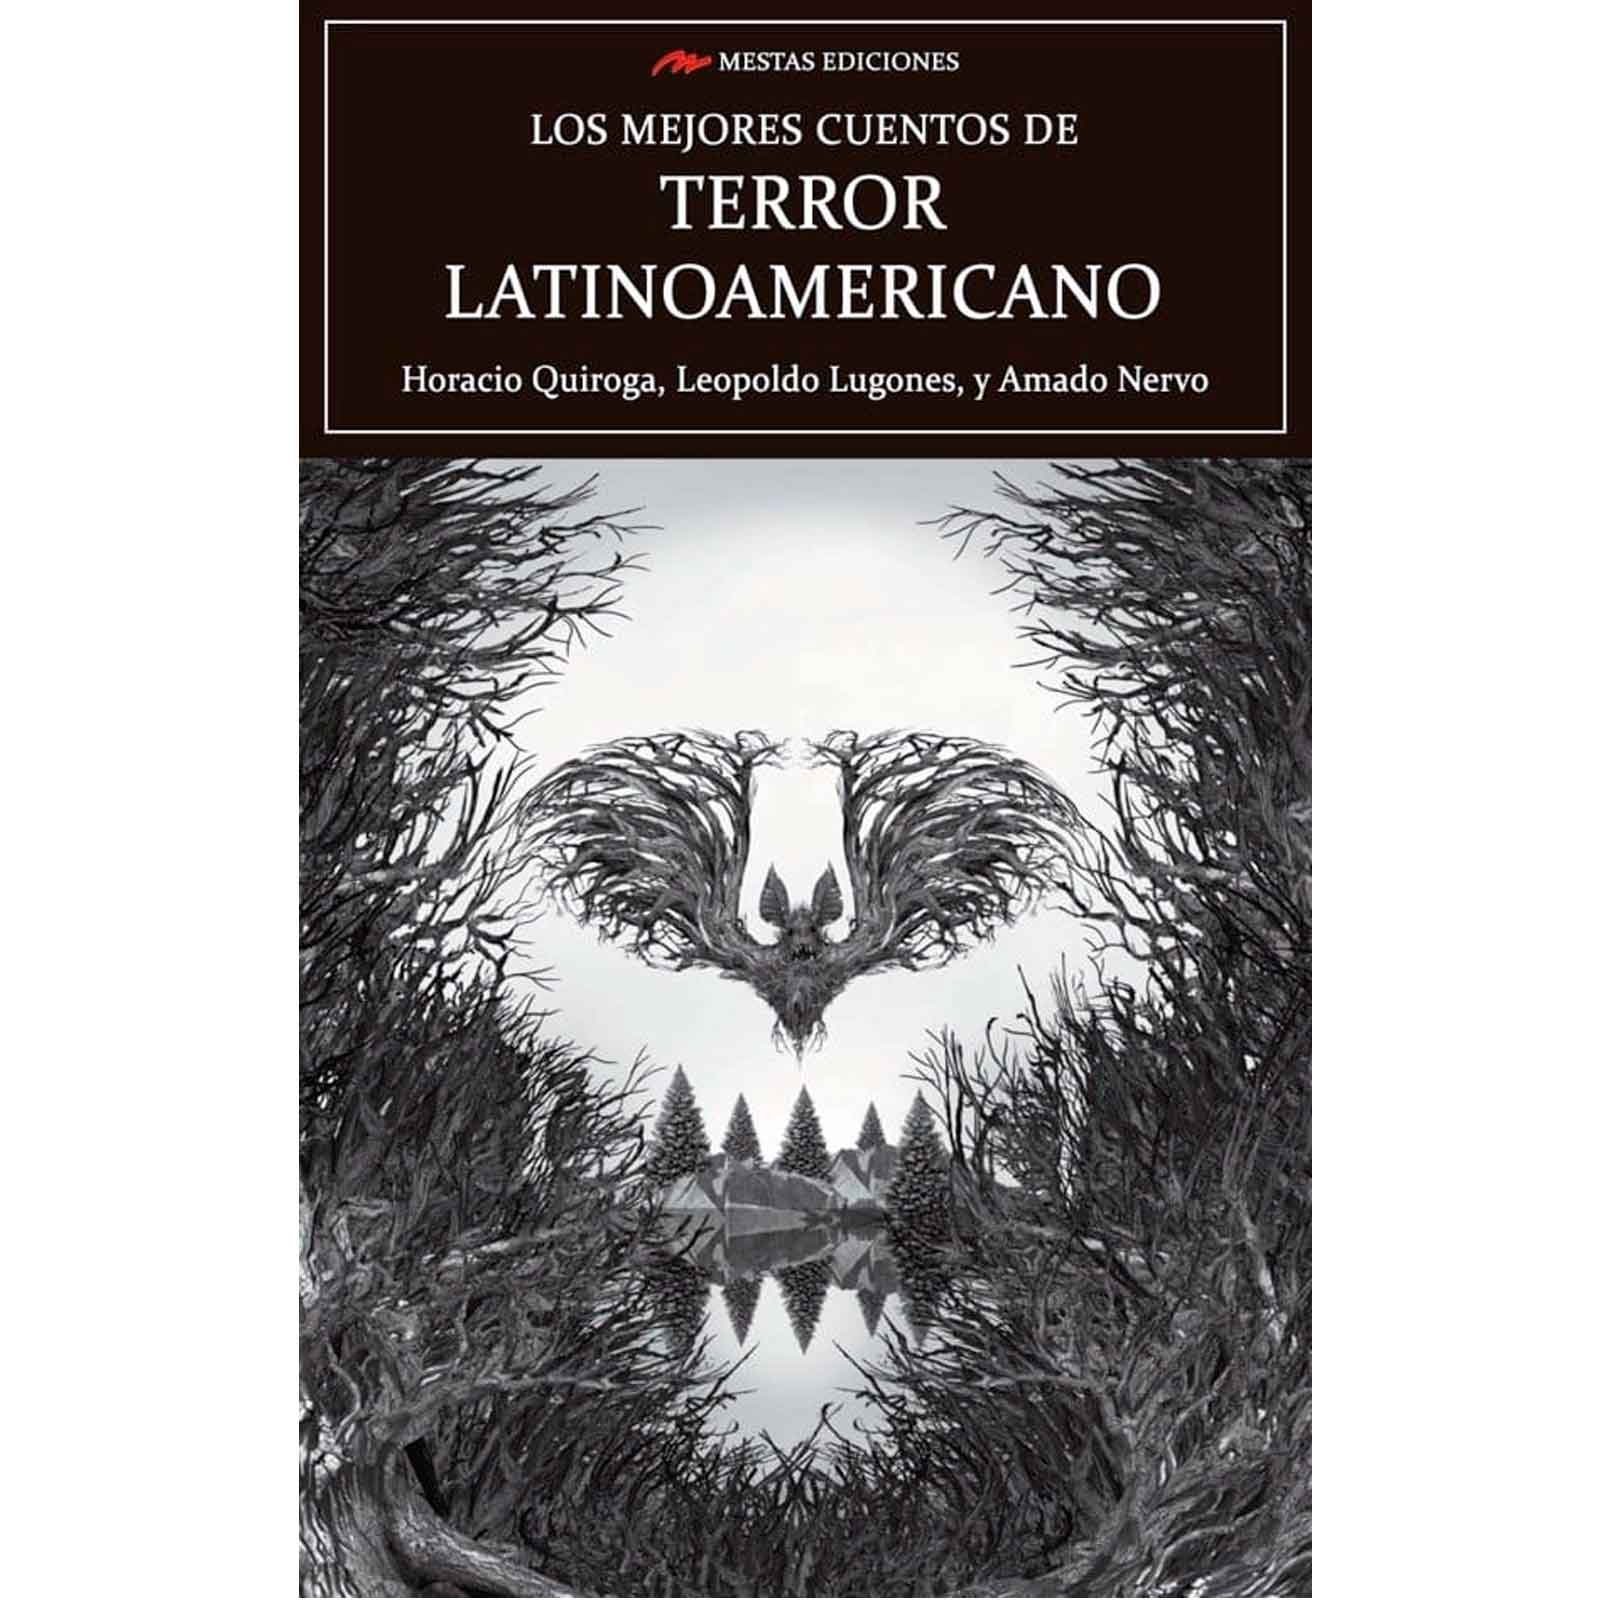 Los mejores cuentos de terror latinoamericano